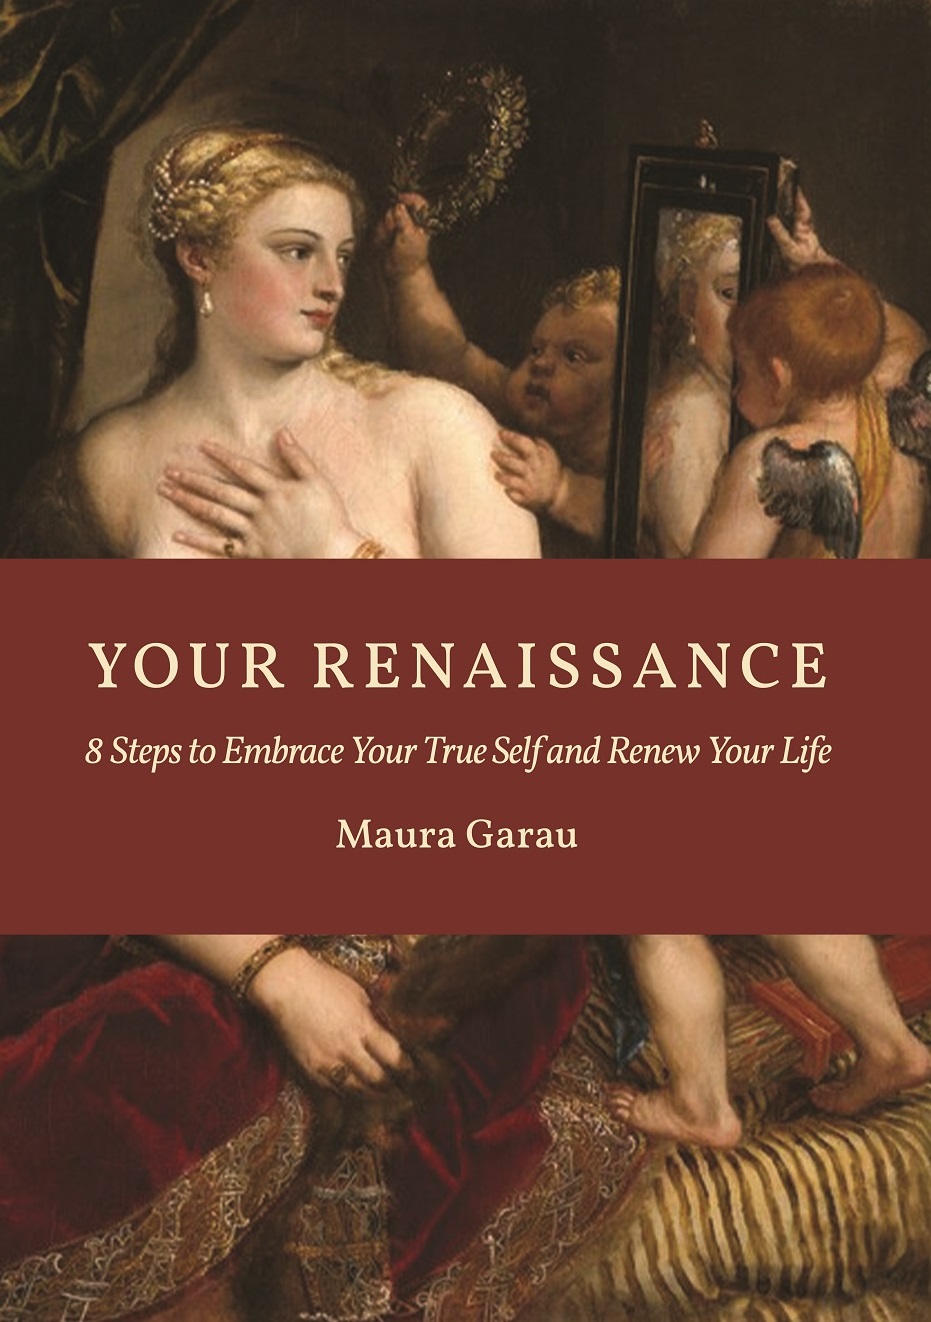 Your Renaissance